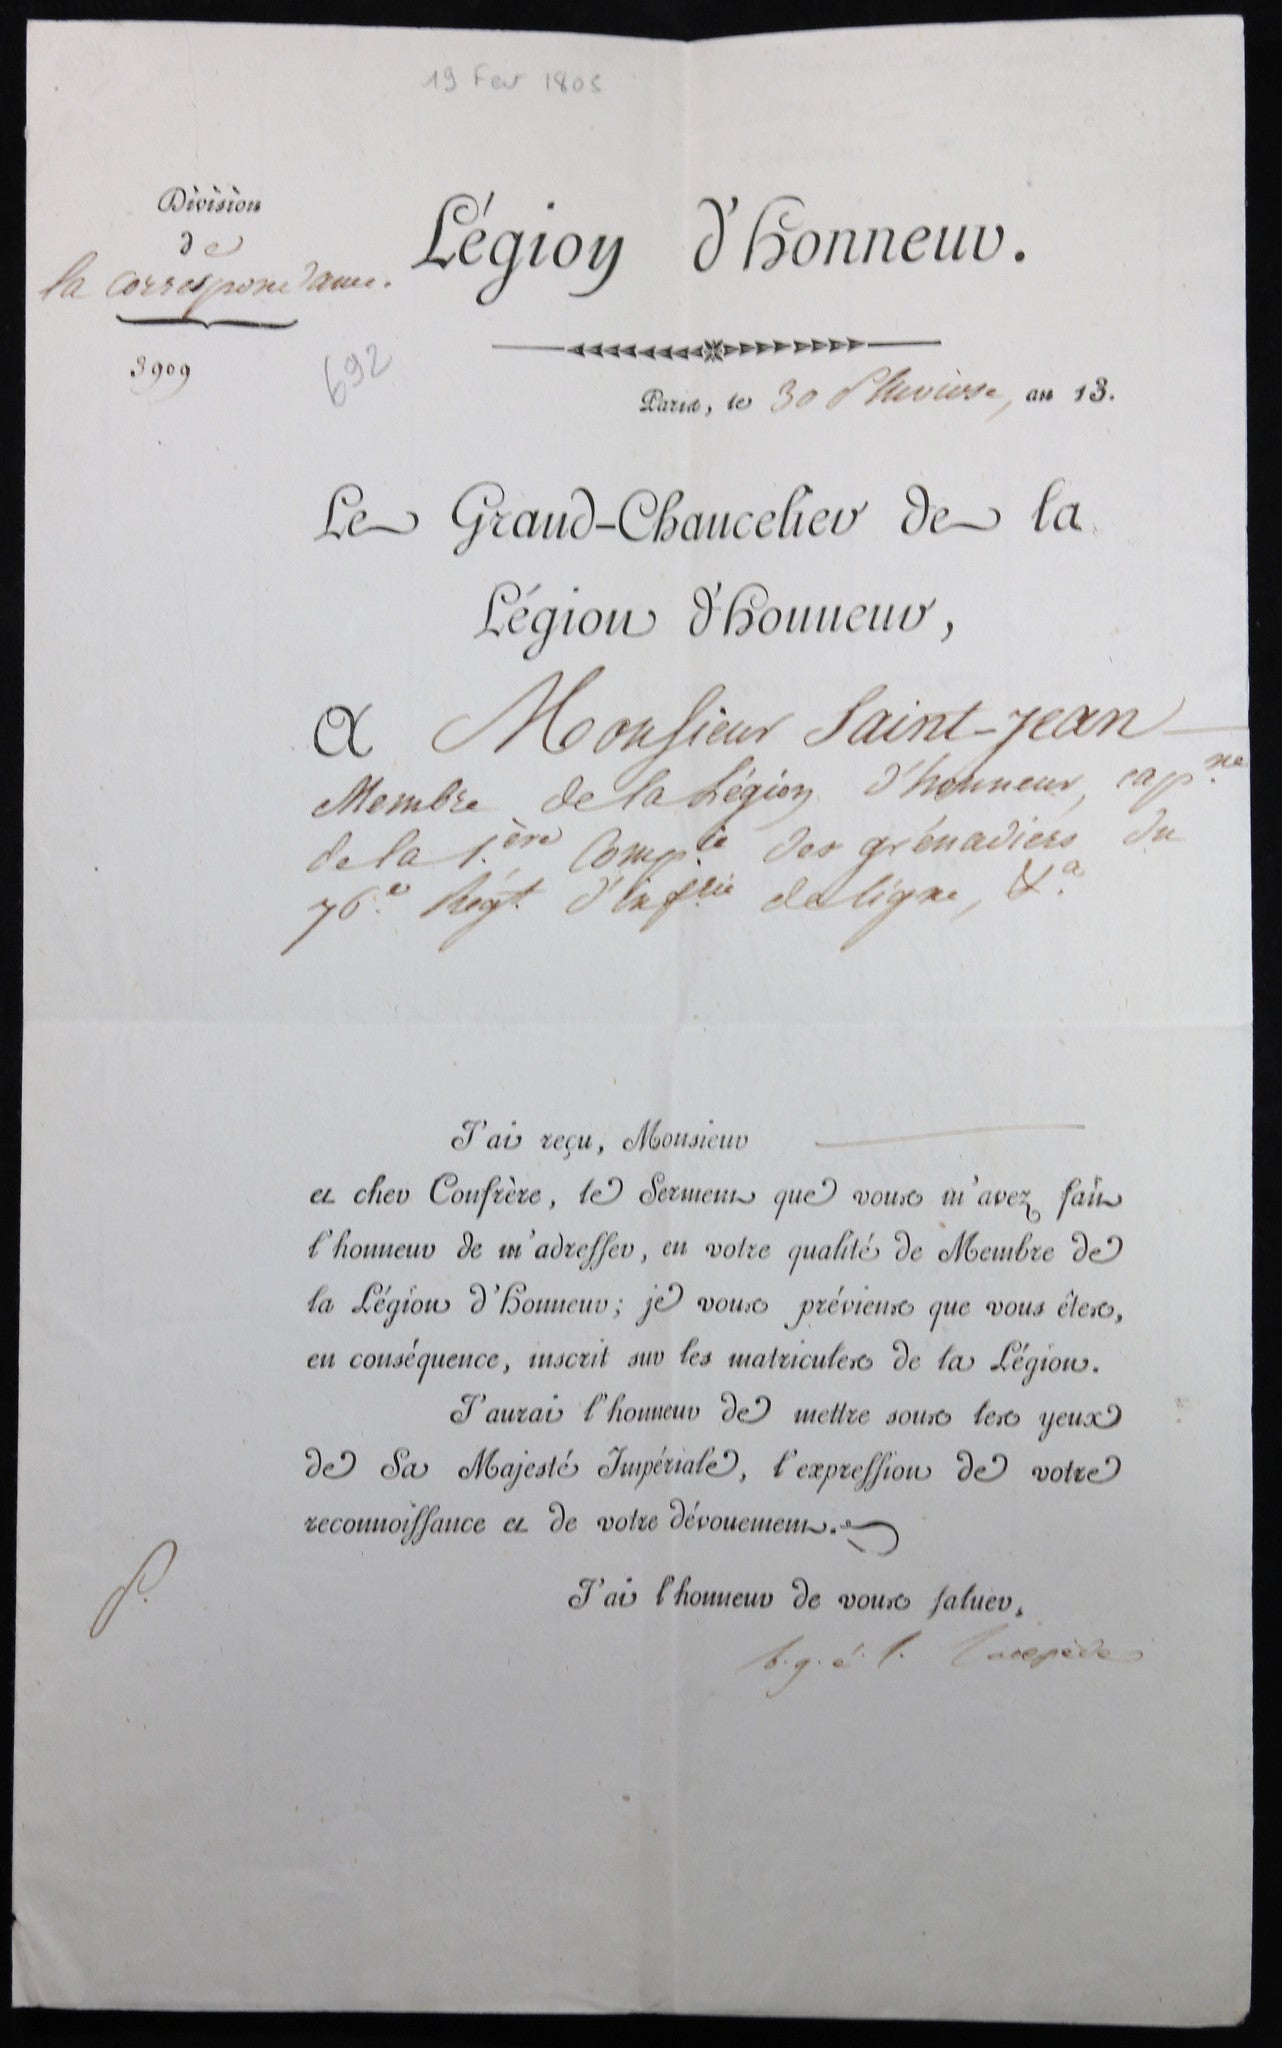 1805 lettre du Comte de Lacépède, réception du serment Légion Honneur